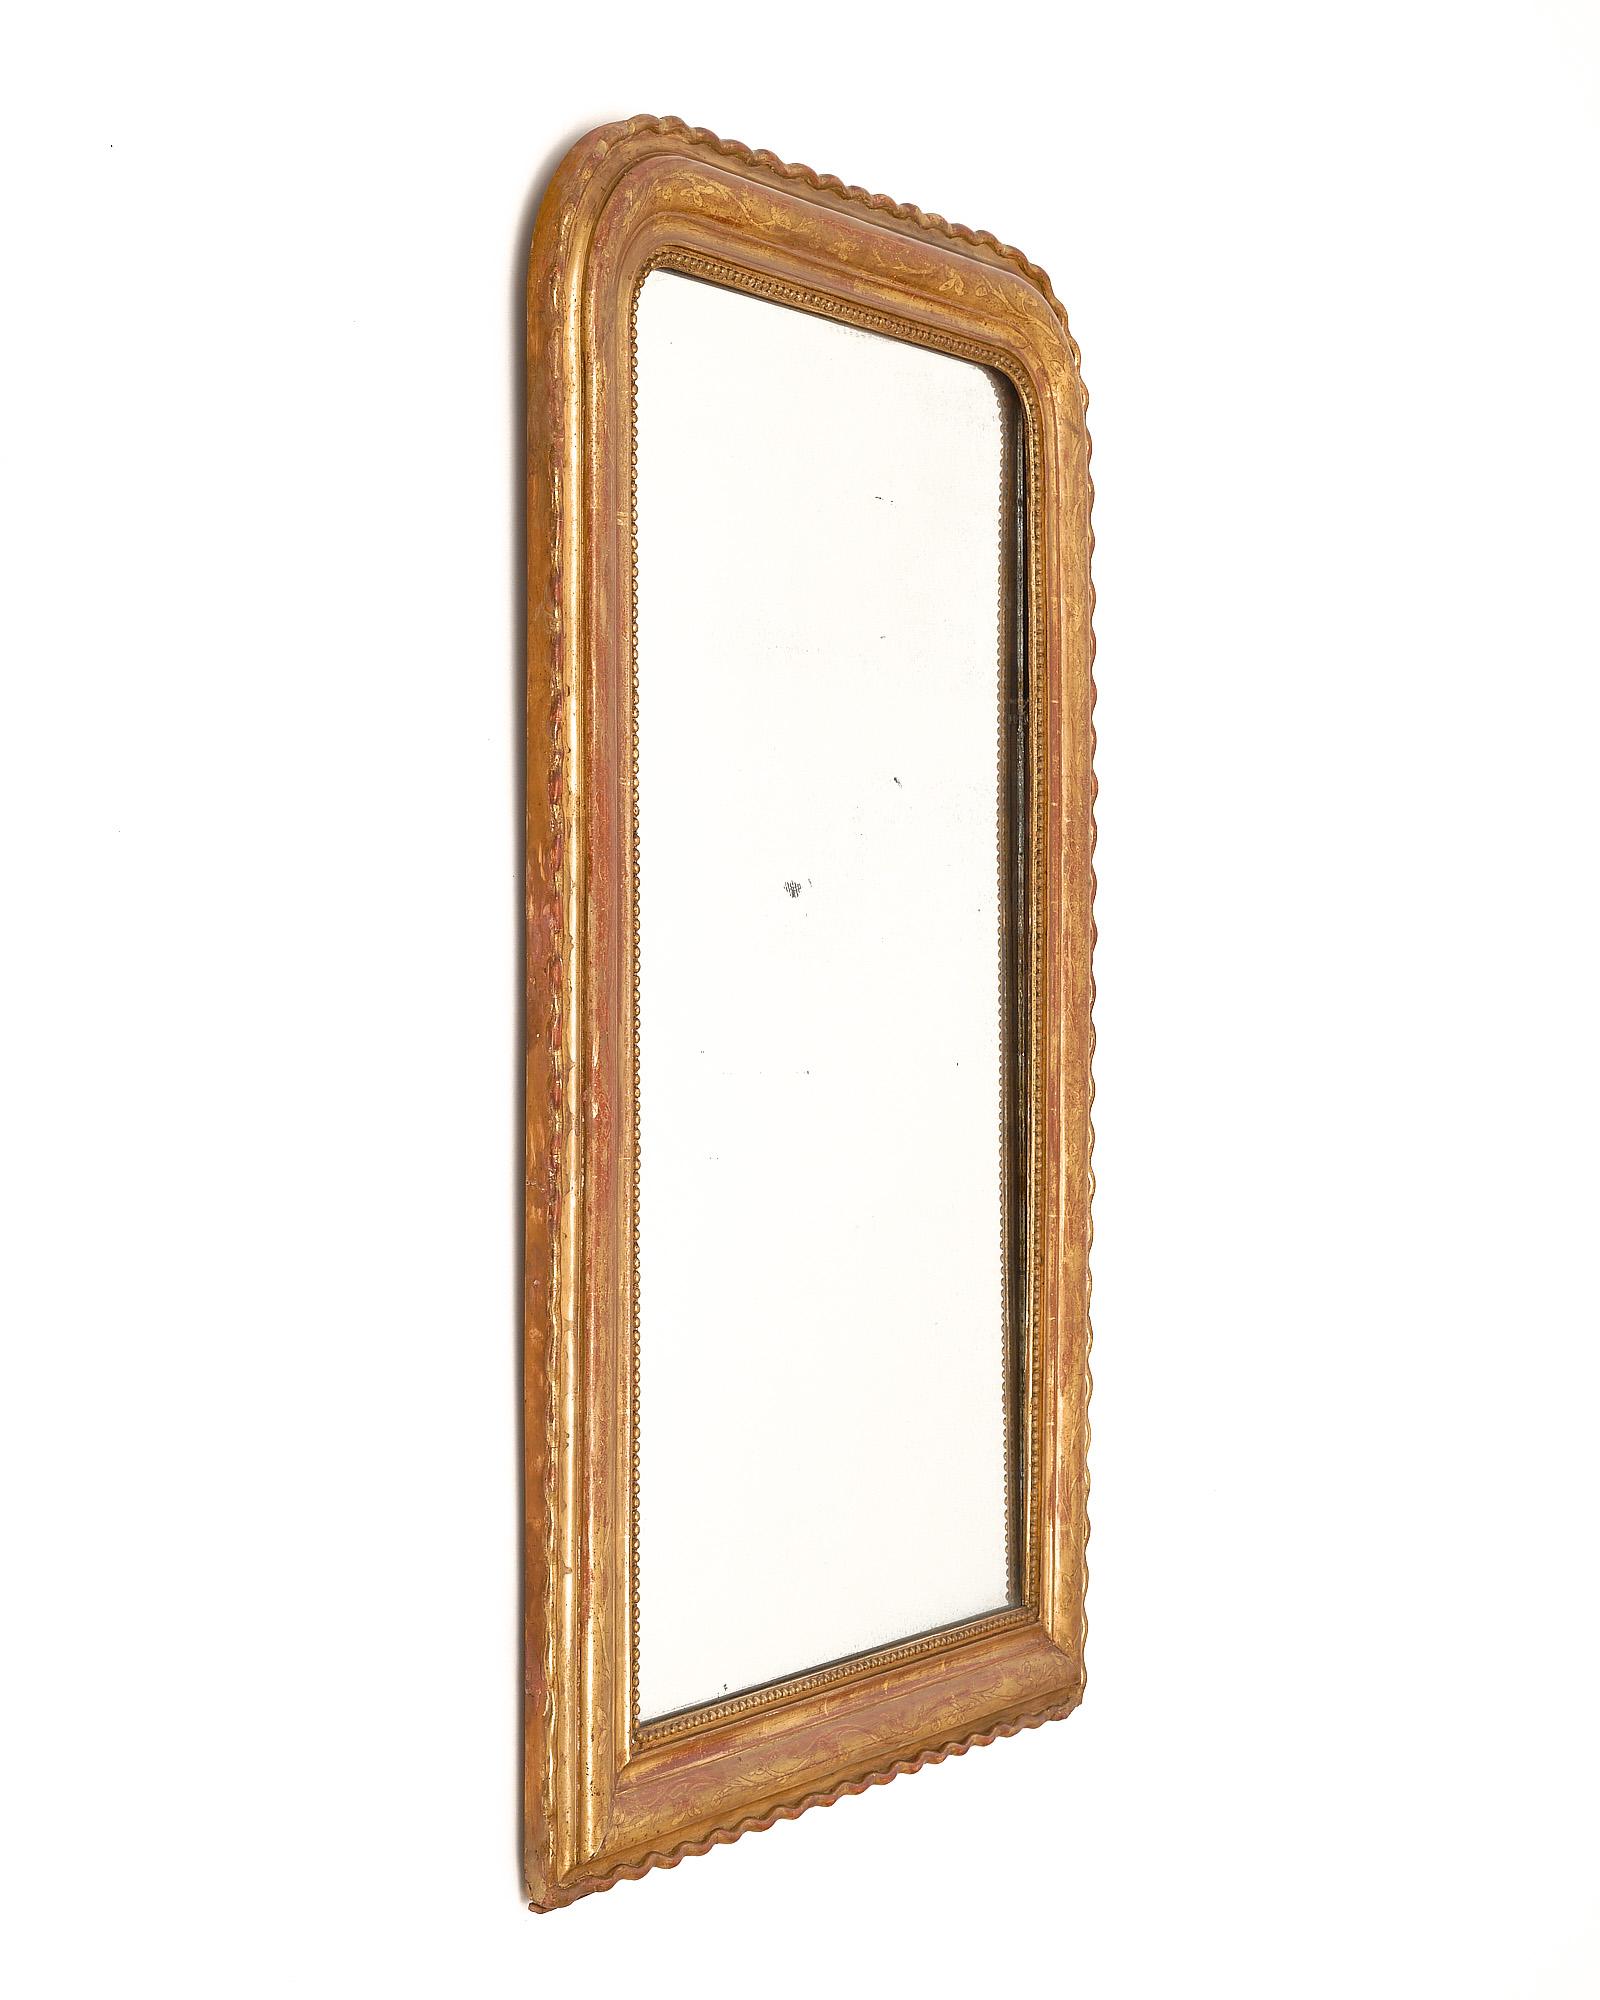 Miroir, français, d'époque Louis Philippe. Ce miroir est en bois massif, sculpté à la main et stuqué. Le miroir néoclassique présente des ciselures florales et la glaçure sienne est recouverte d'une feuille d'or 23 carats patinée. Nous avons été